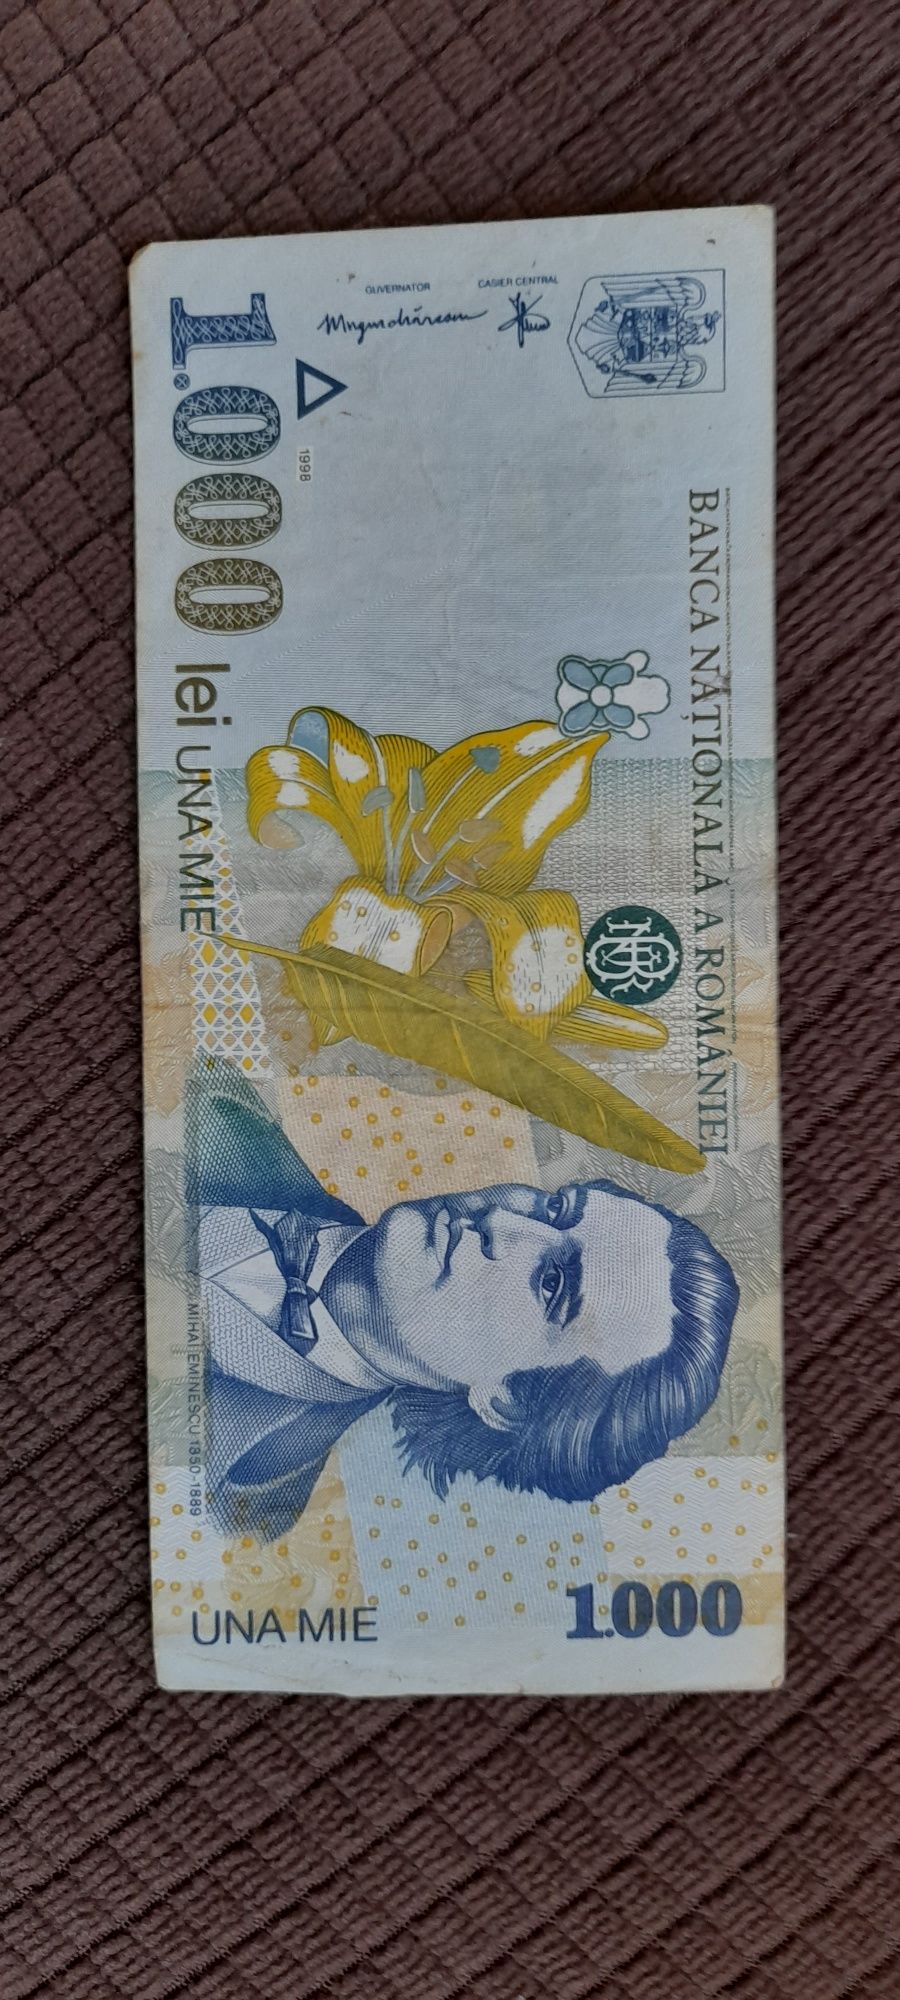 Bancnota 1000 lei din 1998 cu Mihai Eminescu